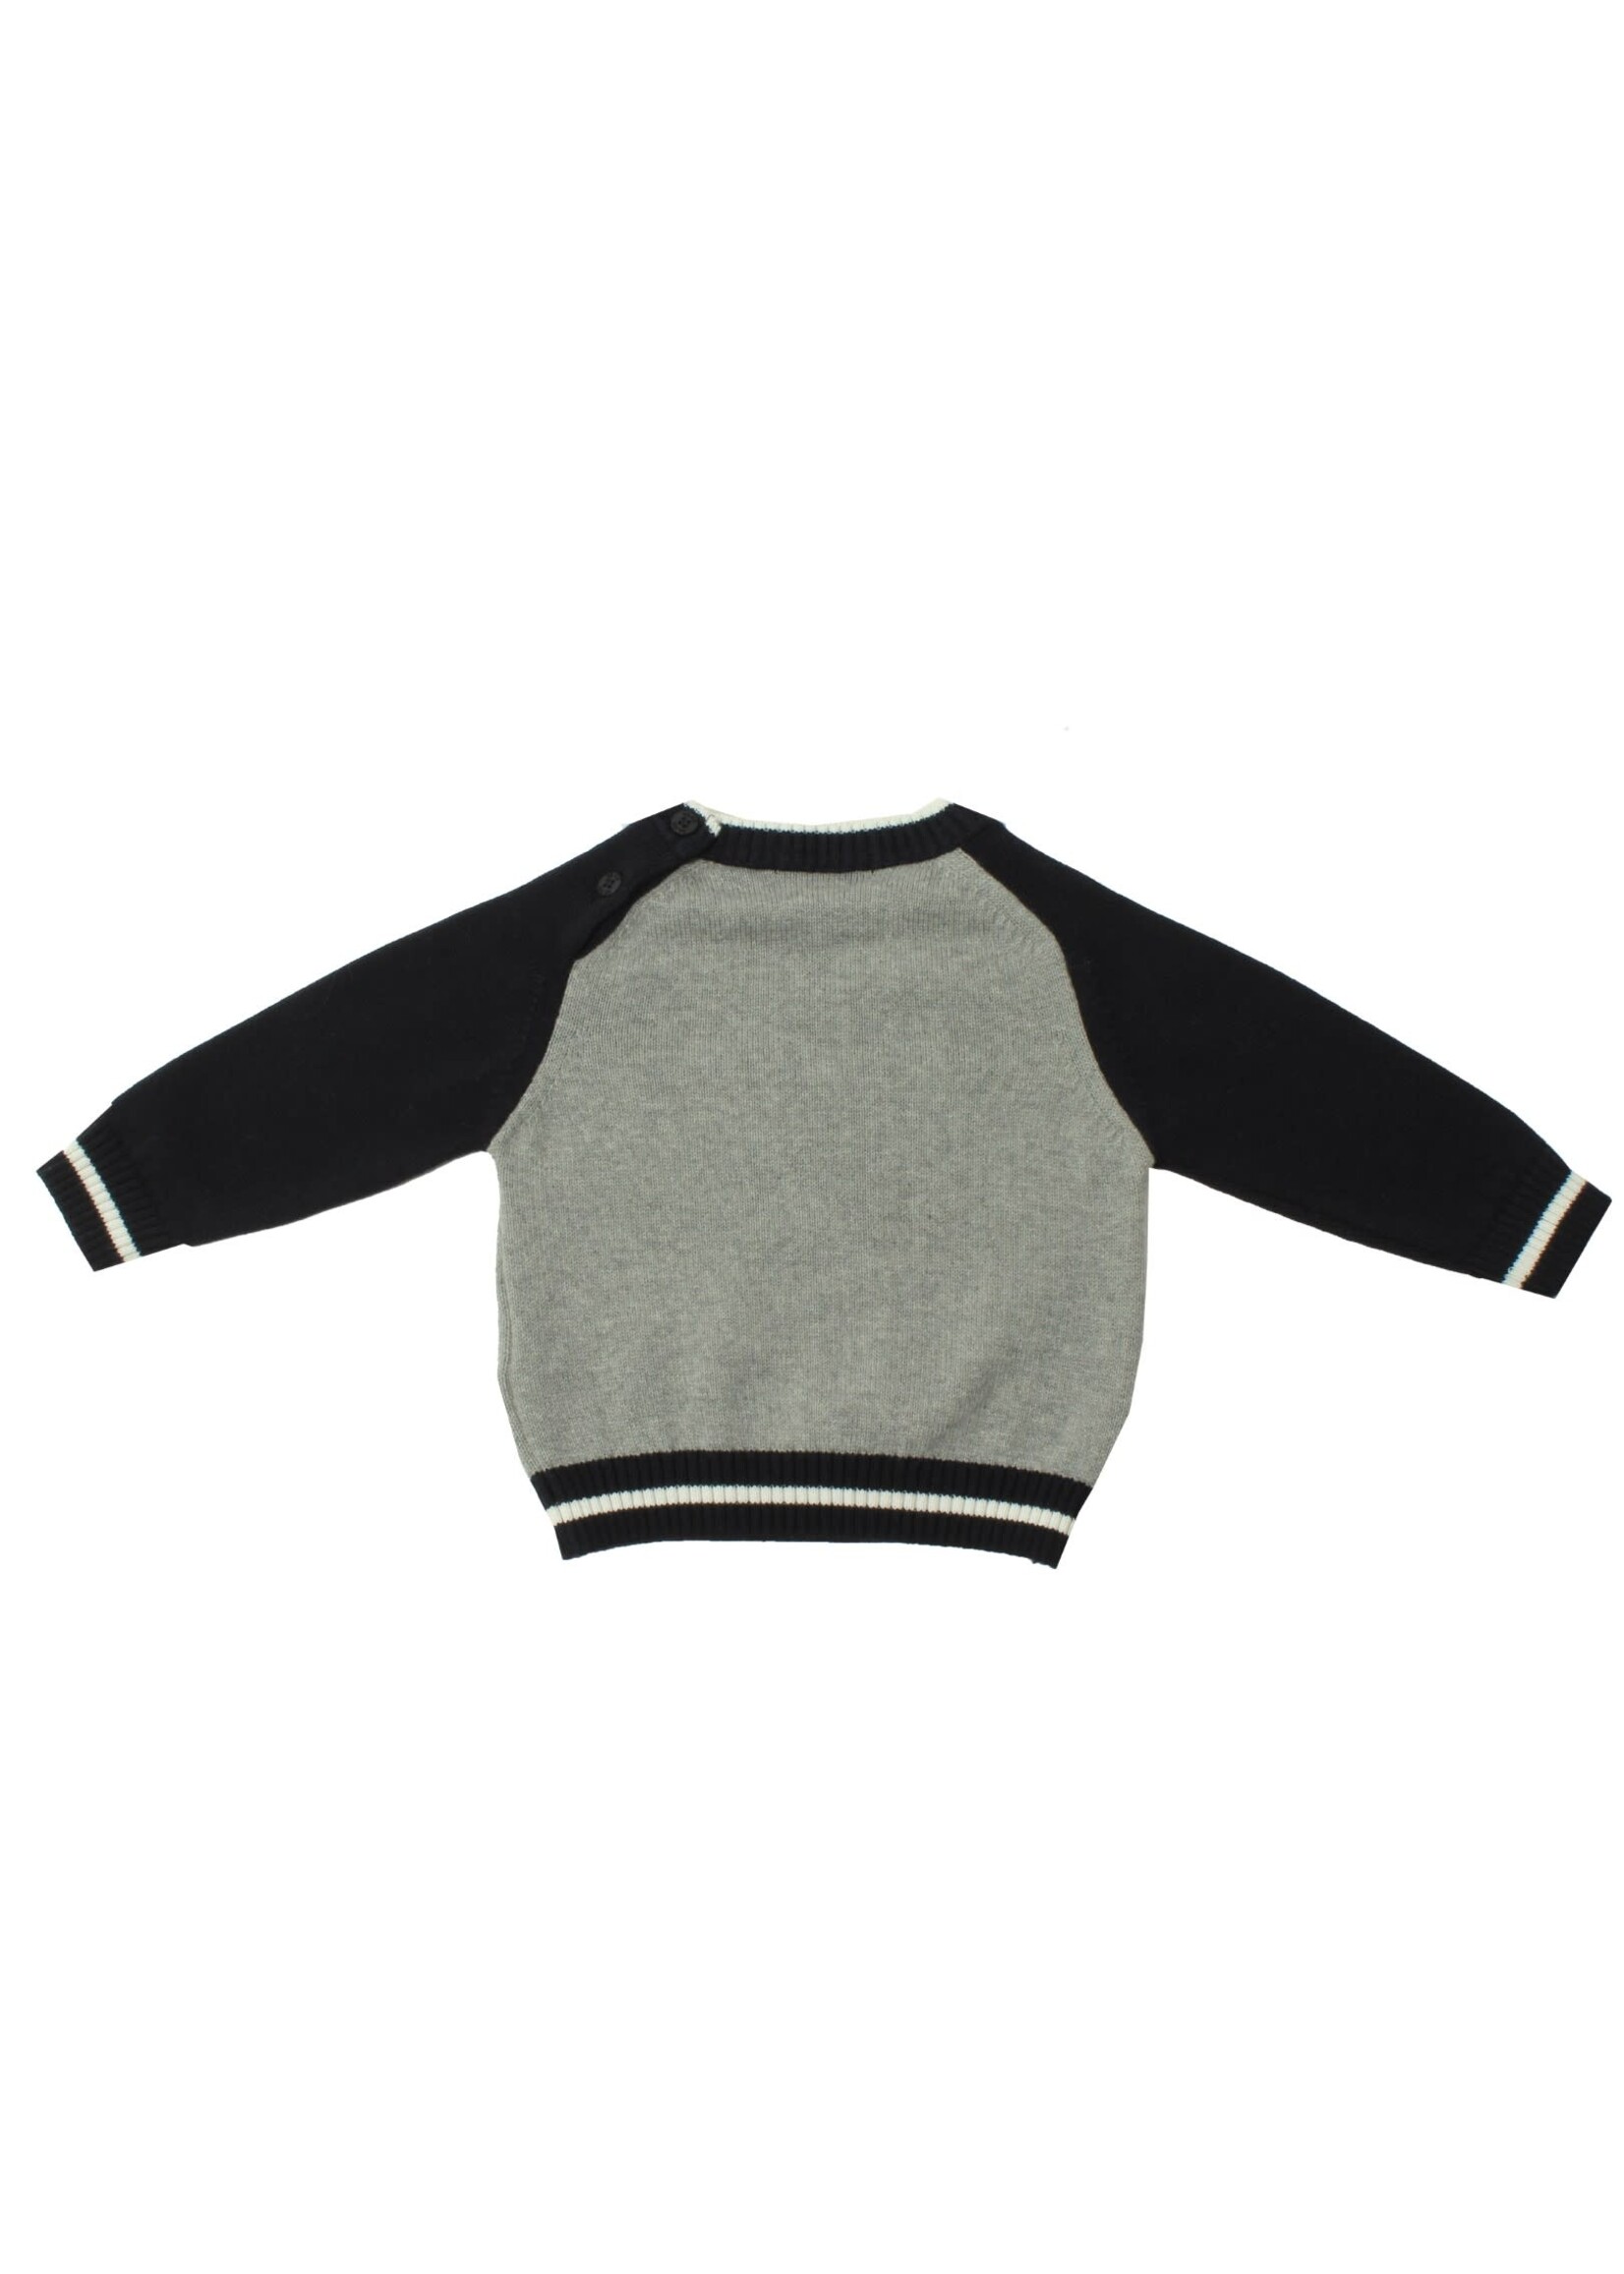 Dr Kid Baby Boy Sweater 280-Marinho-DK510